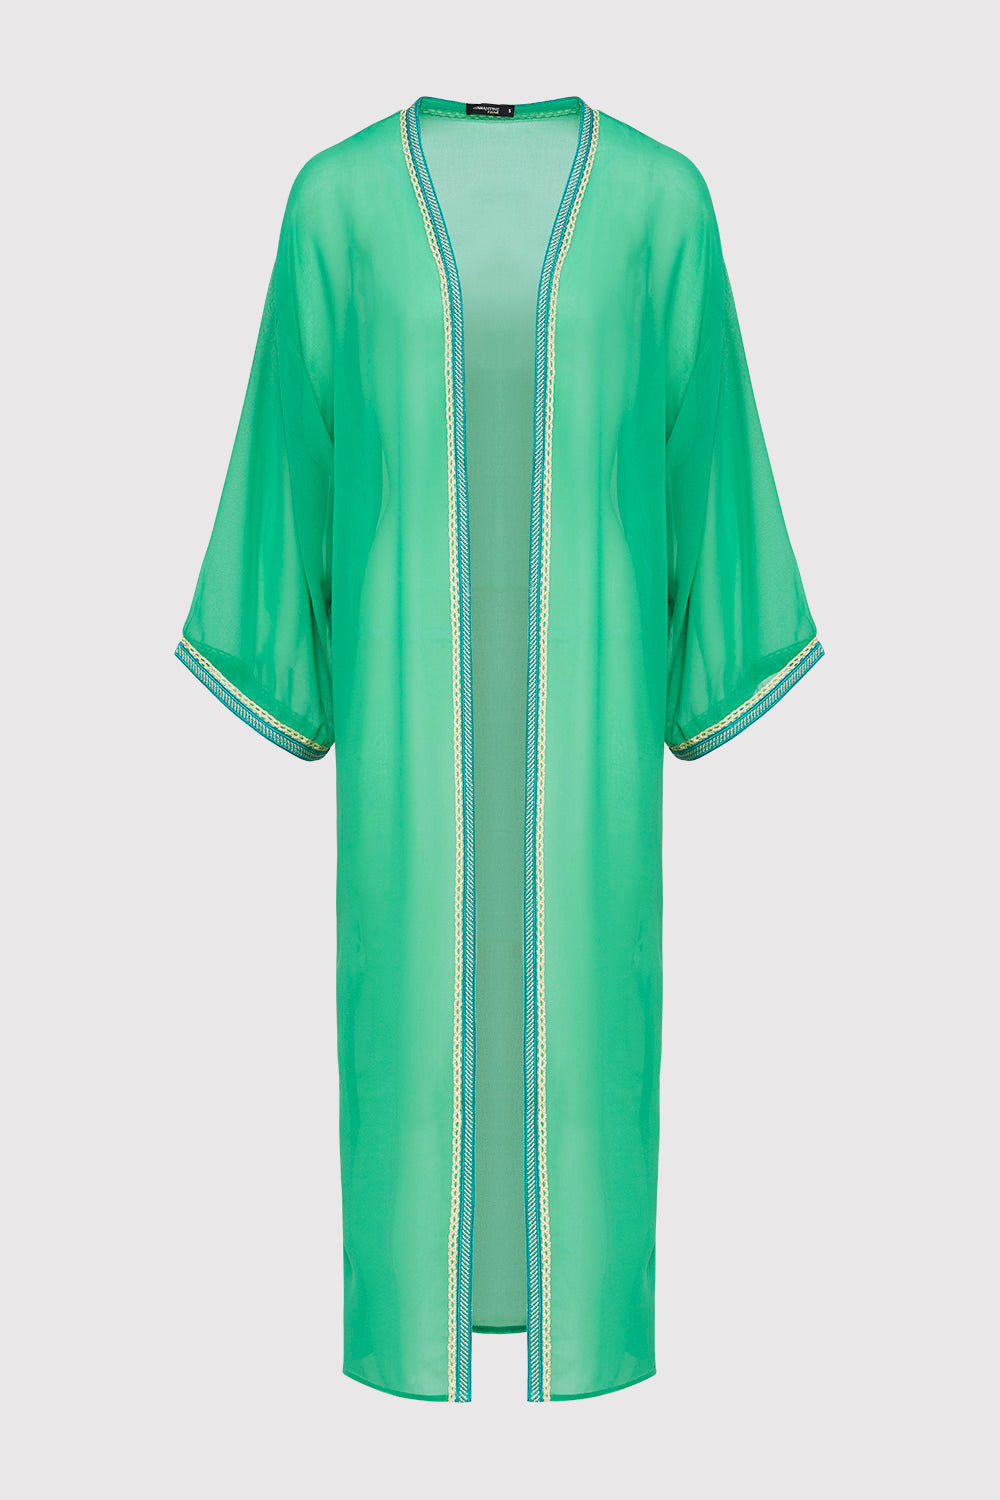 Amazon Women's Chiffon Sheer Long Sleeve Kimono Cape in Green